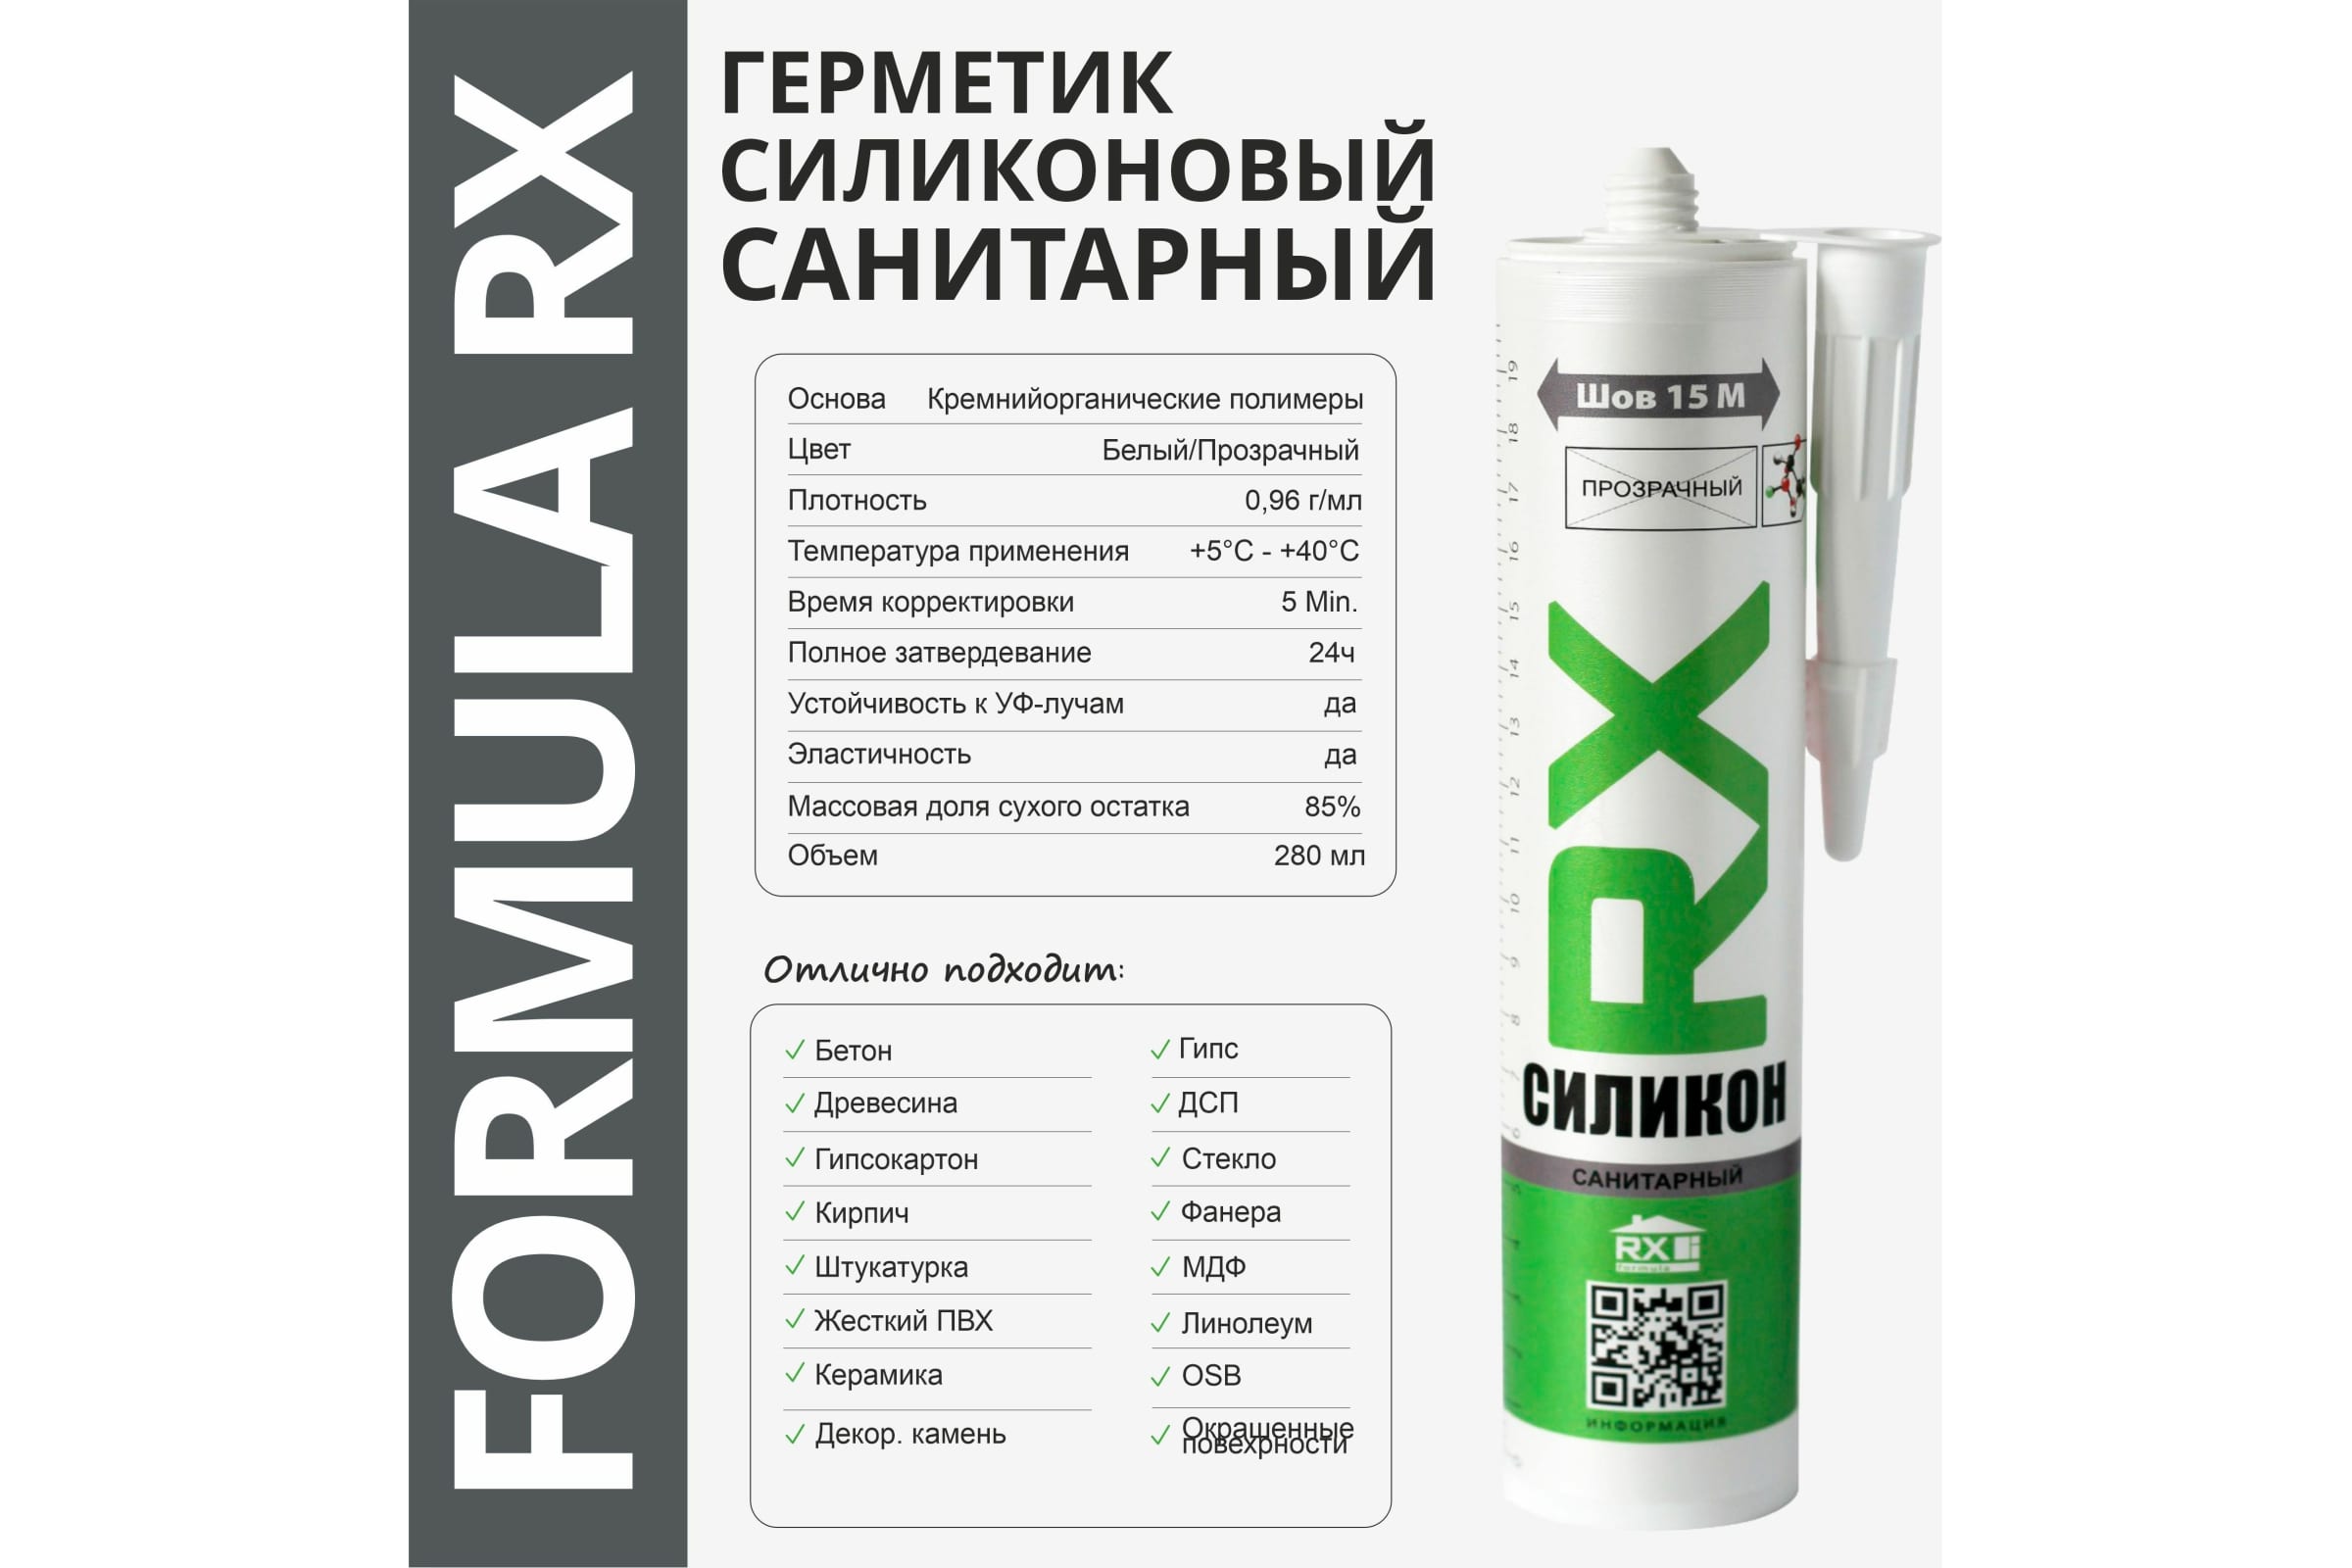 Герметик санитарный RX Formula прозр. 280мл 01-4-1-054